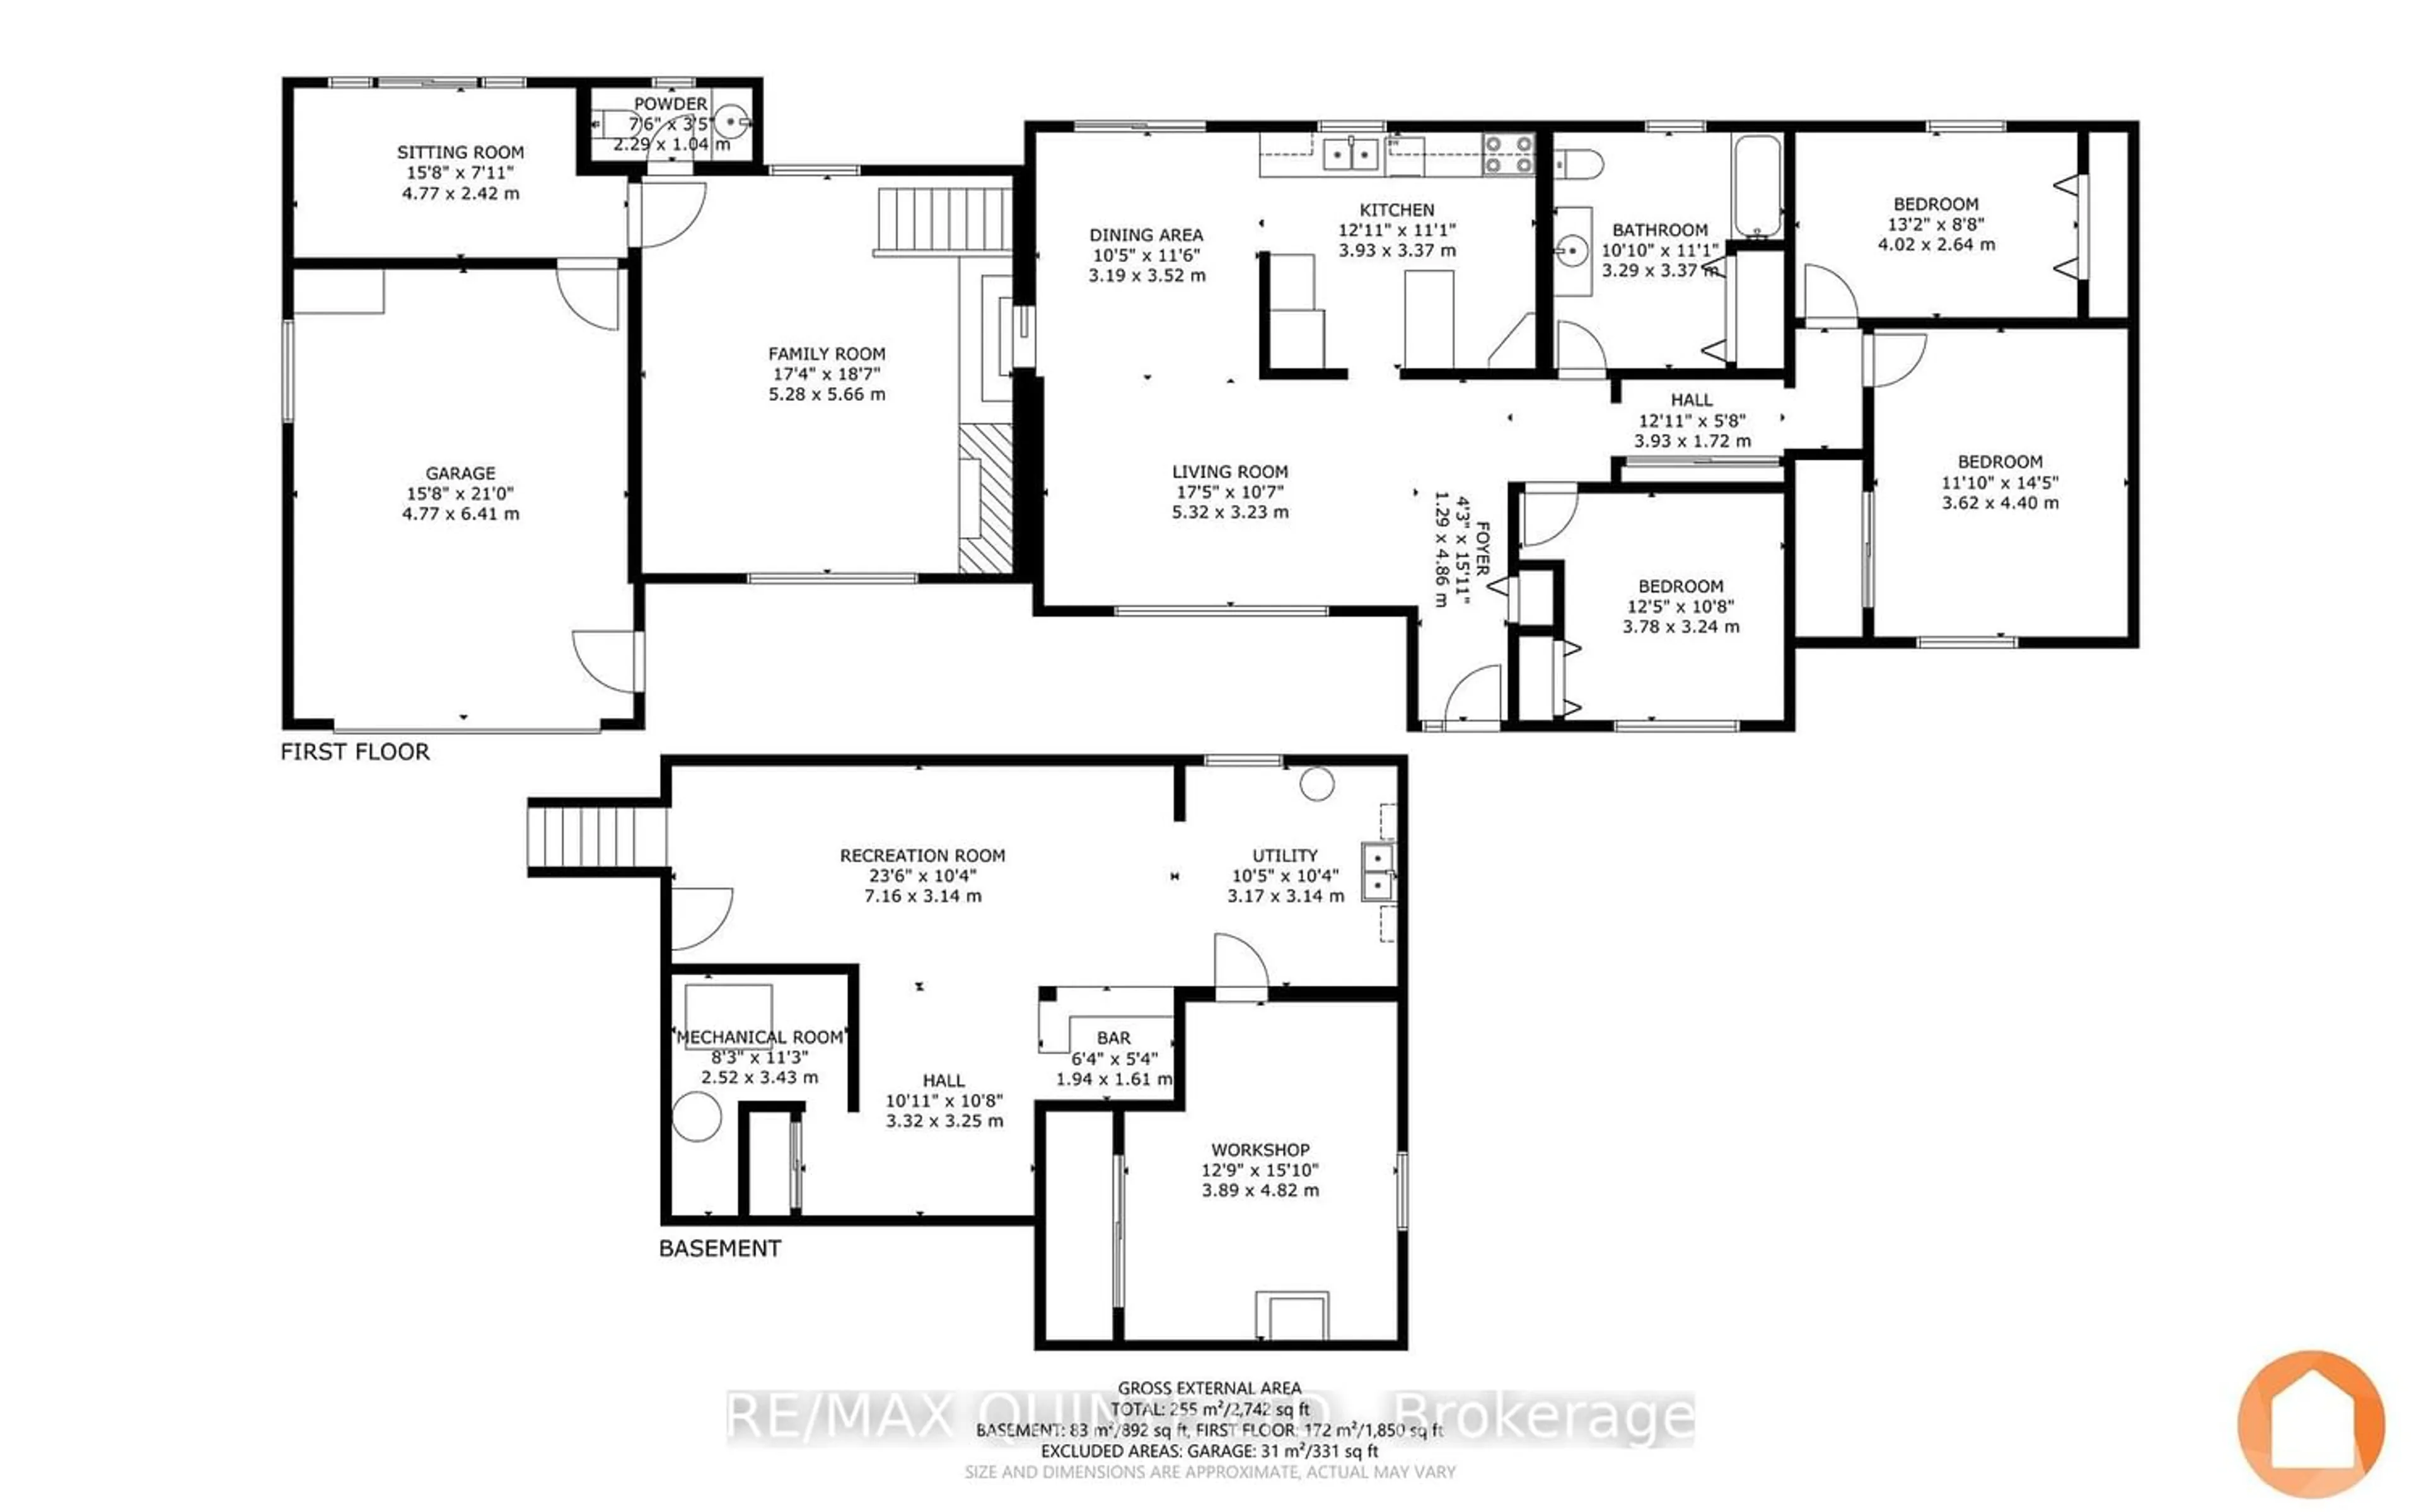 Floor plan for 120 Avonlough Rd, Belleville Ontario K8N 4Z2